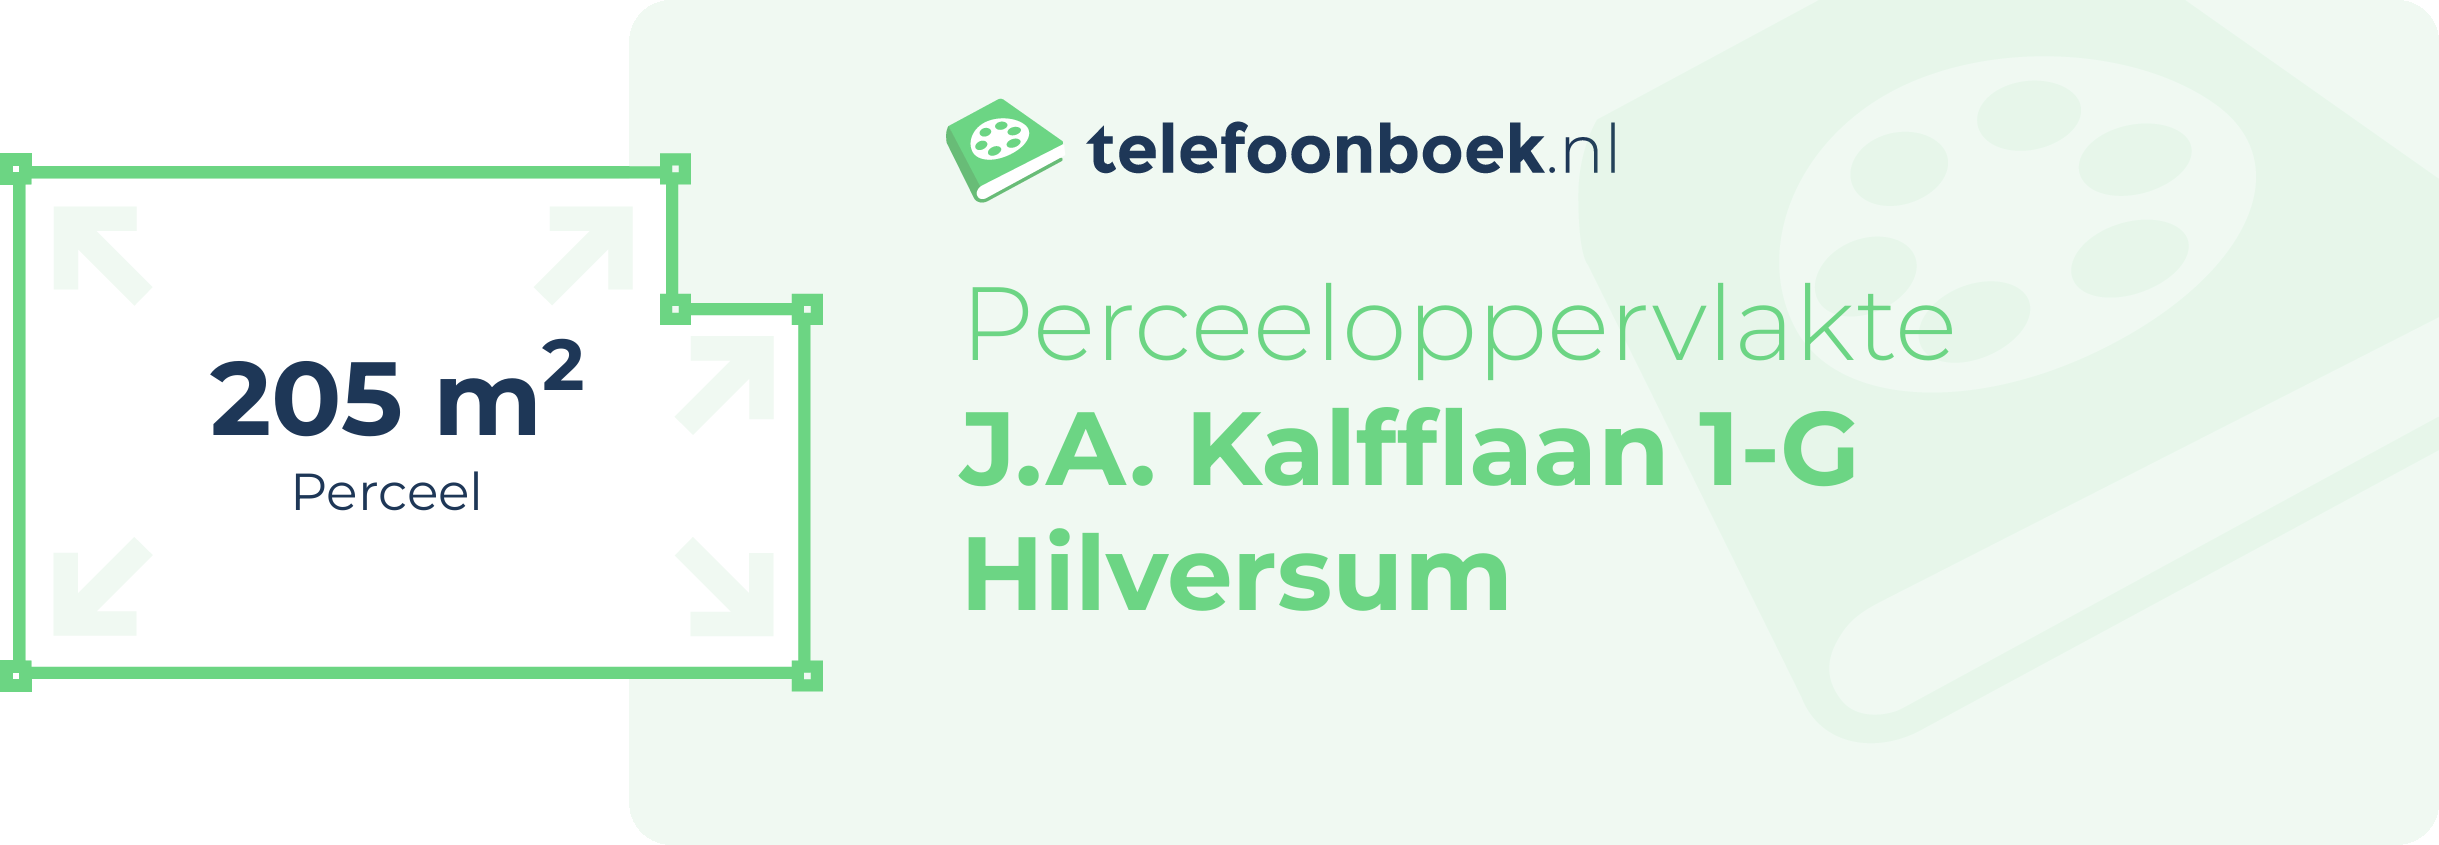 Perceeloppervlakte J.A. Kalfflaan 1-G Hilversum